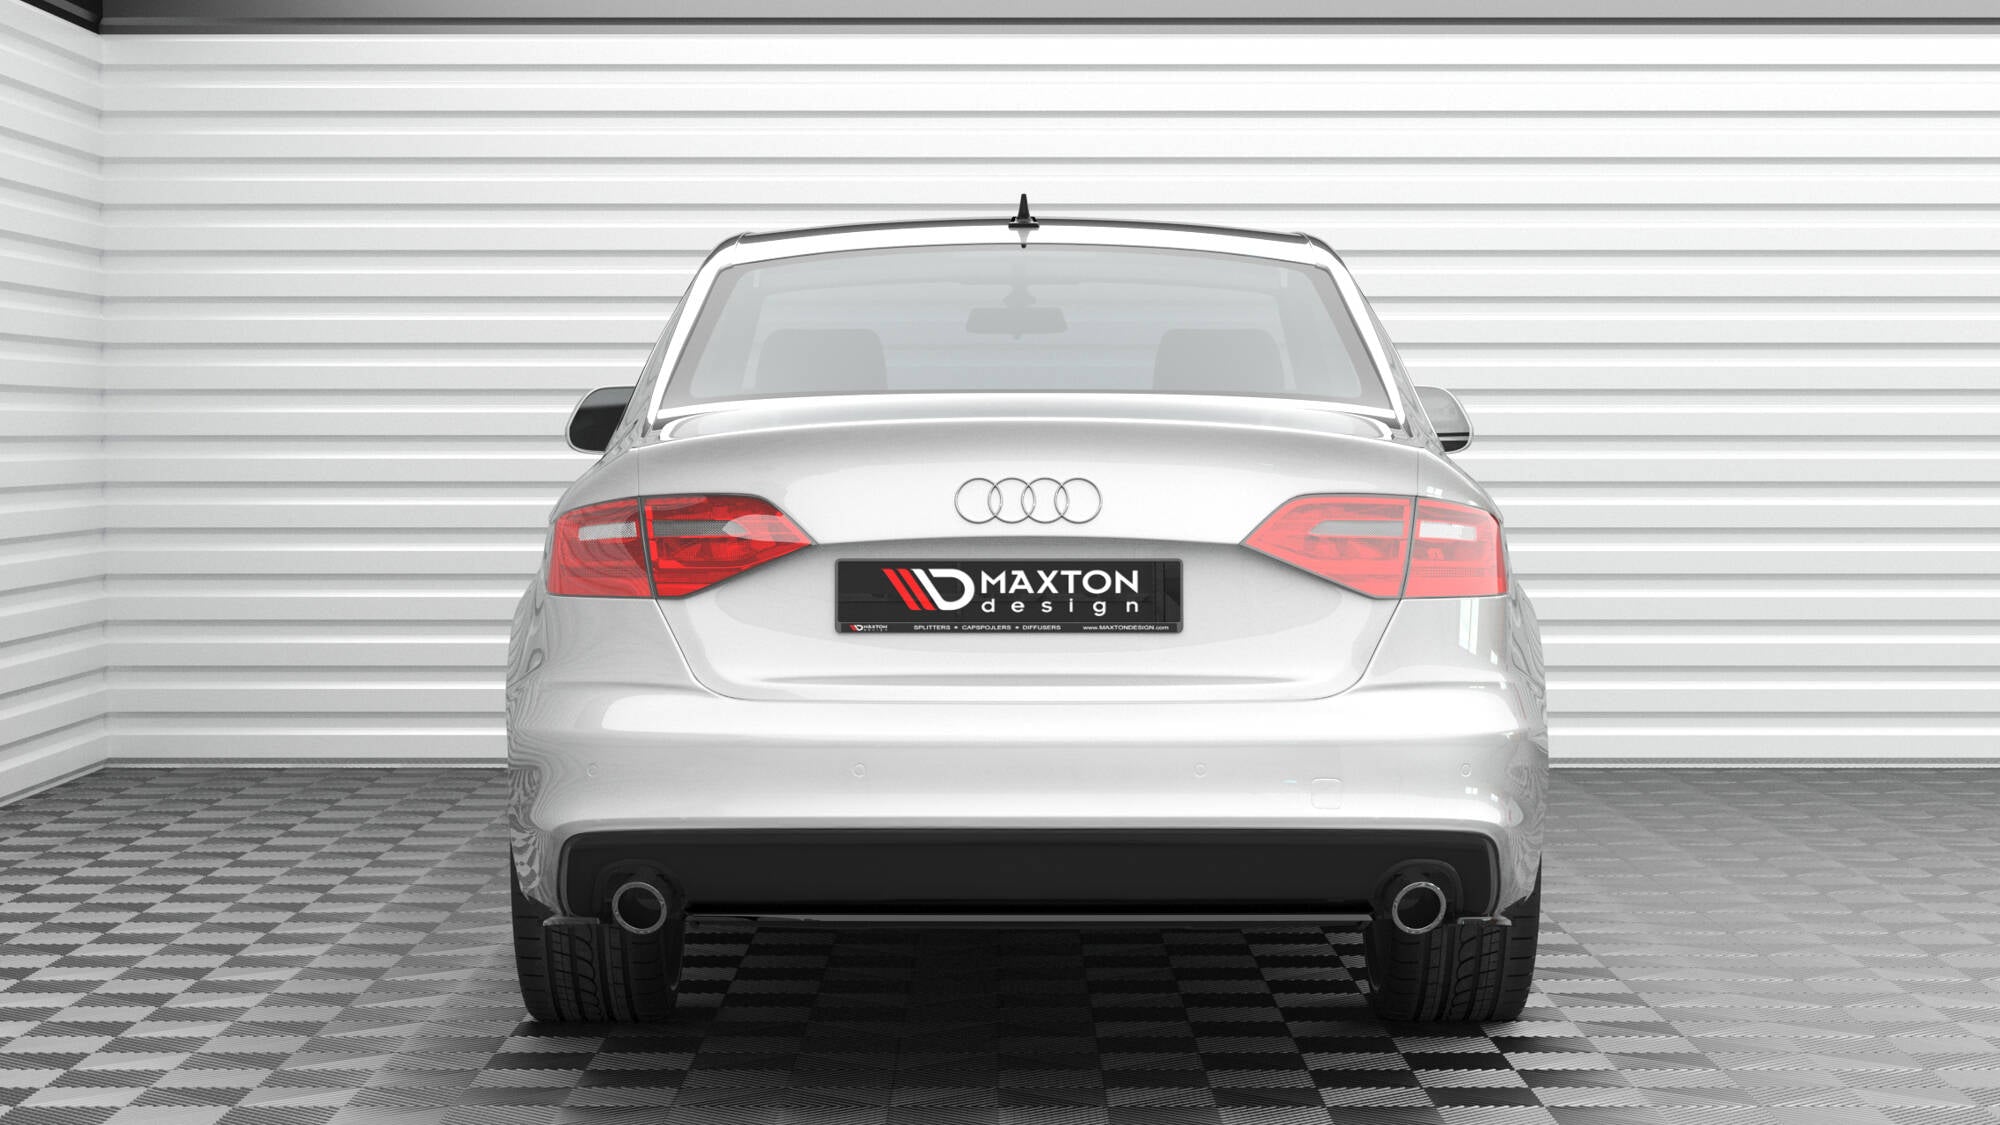 Central Rear Splitter for Audi A4 S-Line B8 Facelift